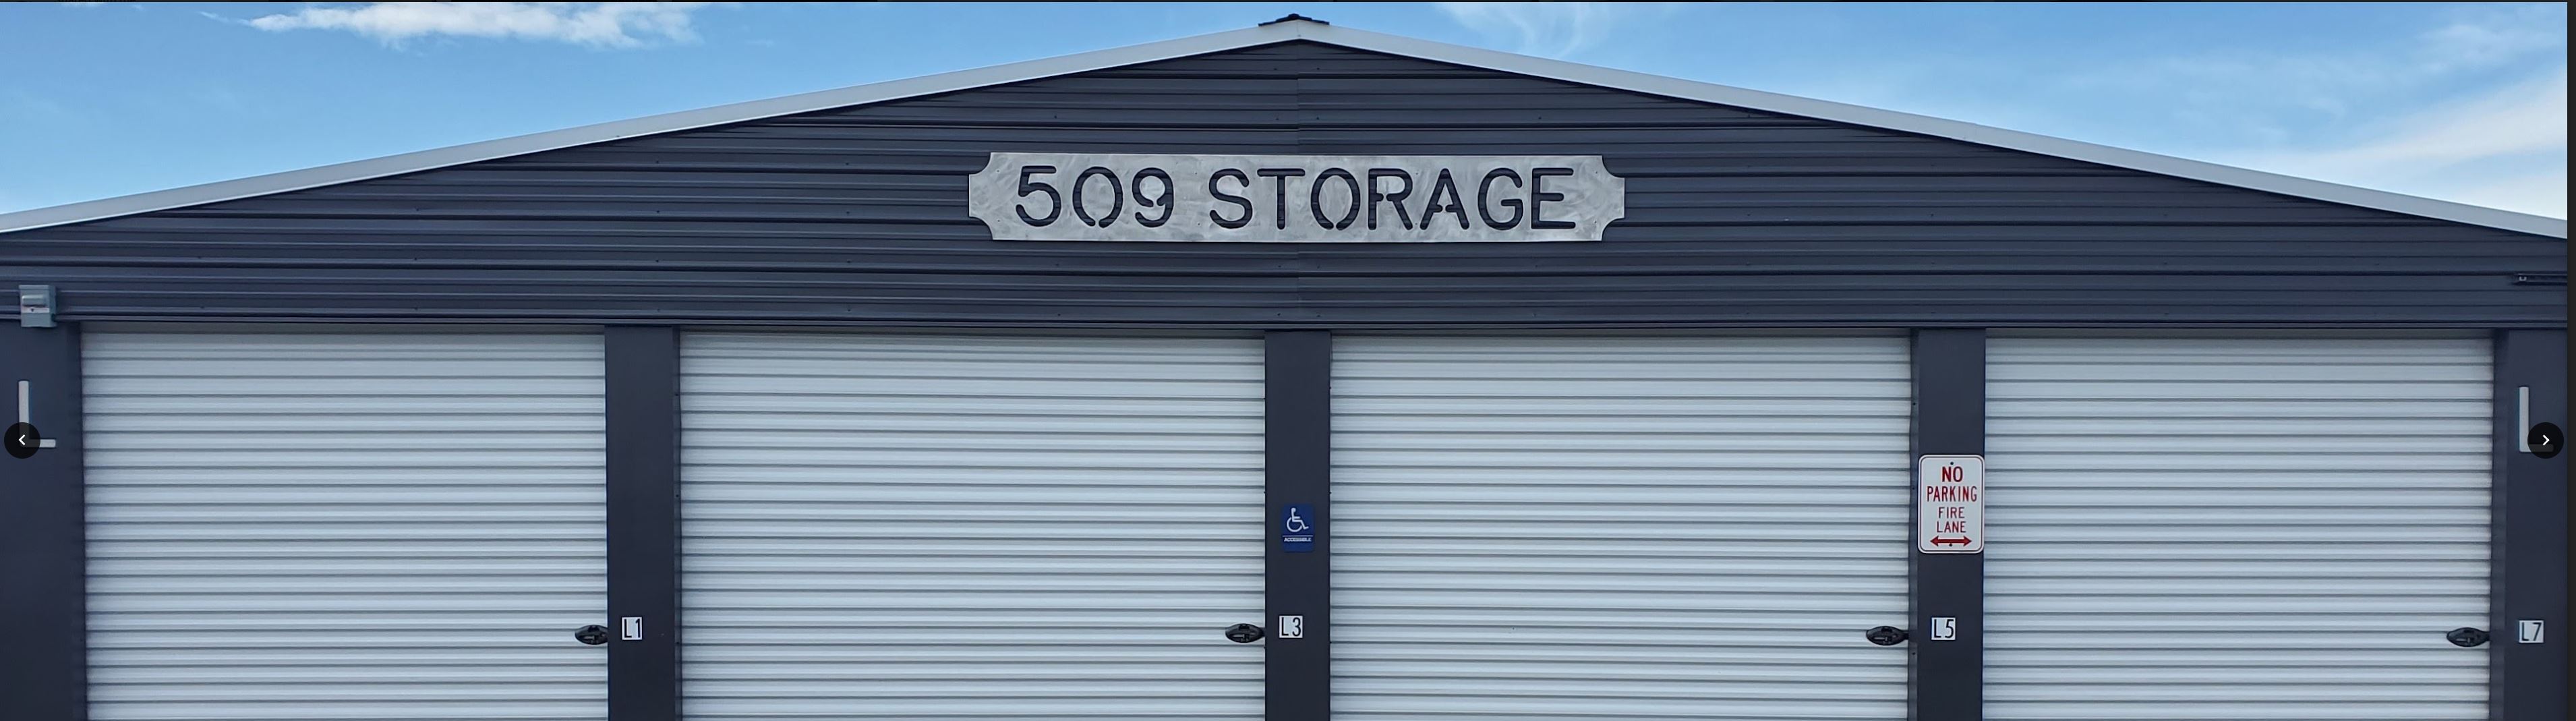 509 Storage